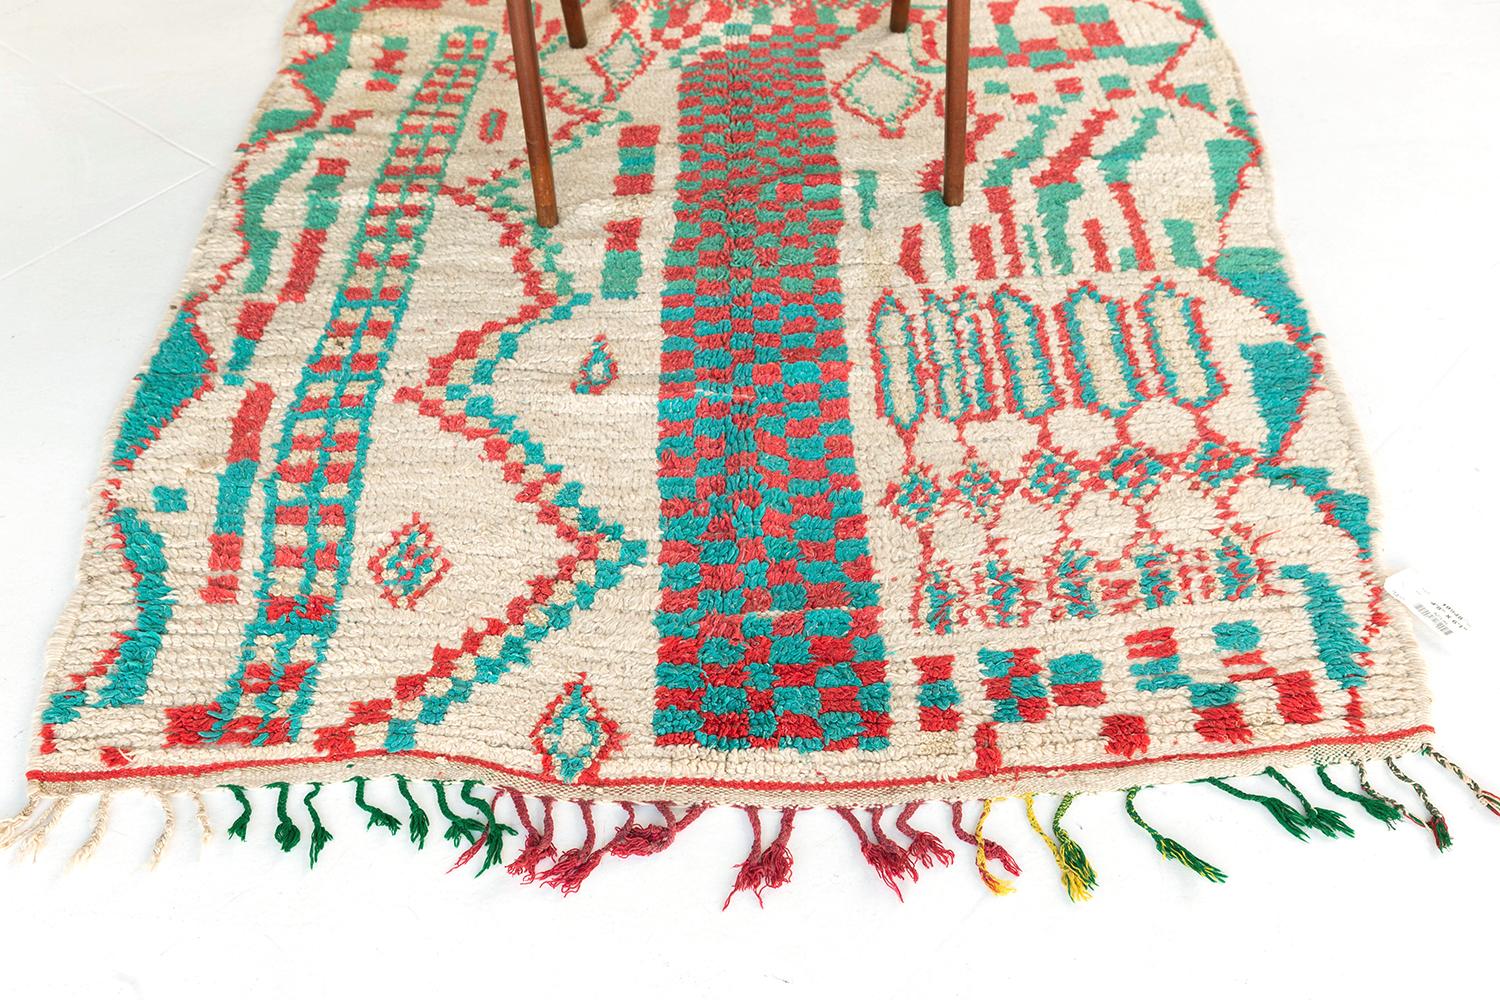 Mit seiner schicken und verführerischen Asymmetrie bietet dieser marokkanische Vintage-Stamm Azilal aus der Atlas-Kollektion ein optisch tadelloses Design. Dieser prächtige Teppich zeigt ein verblüffend vieldeutiges Muster aus karierten Motiven,